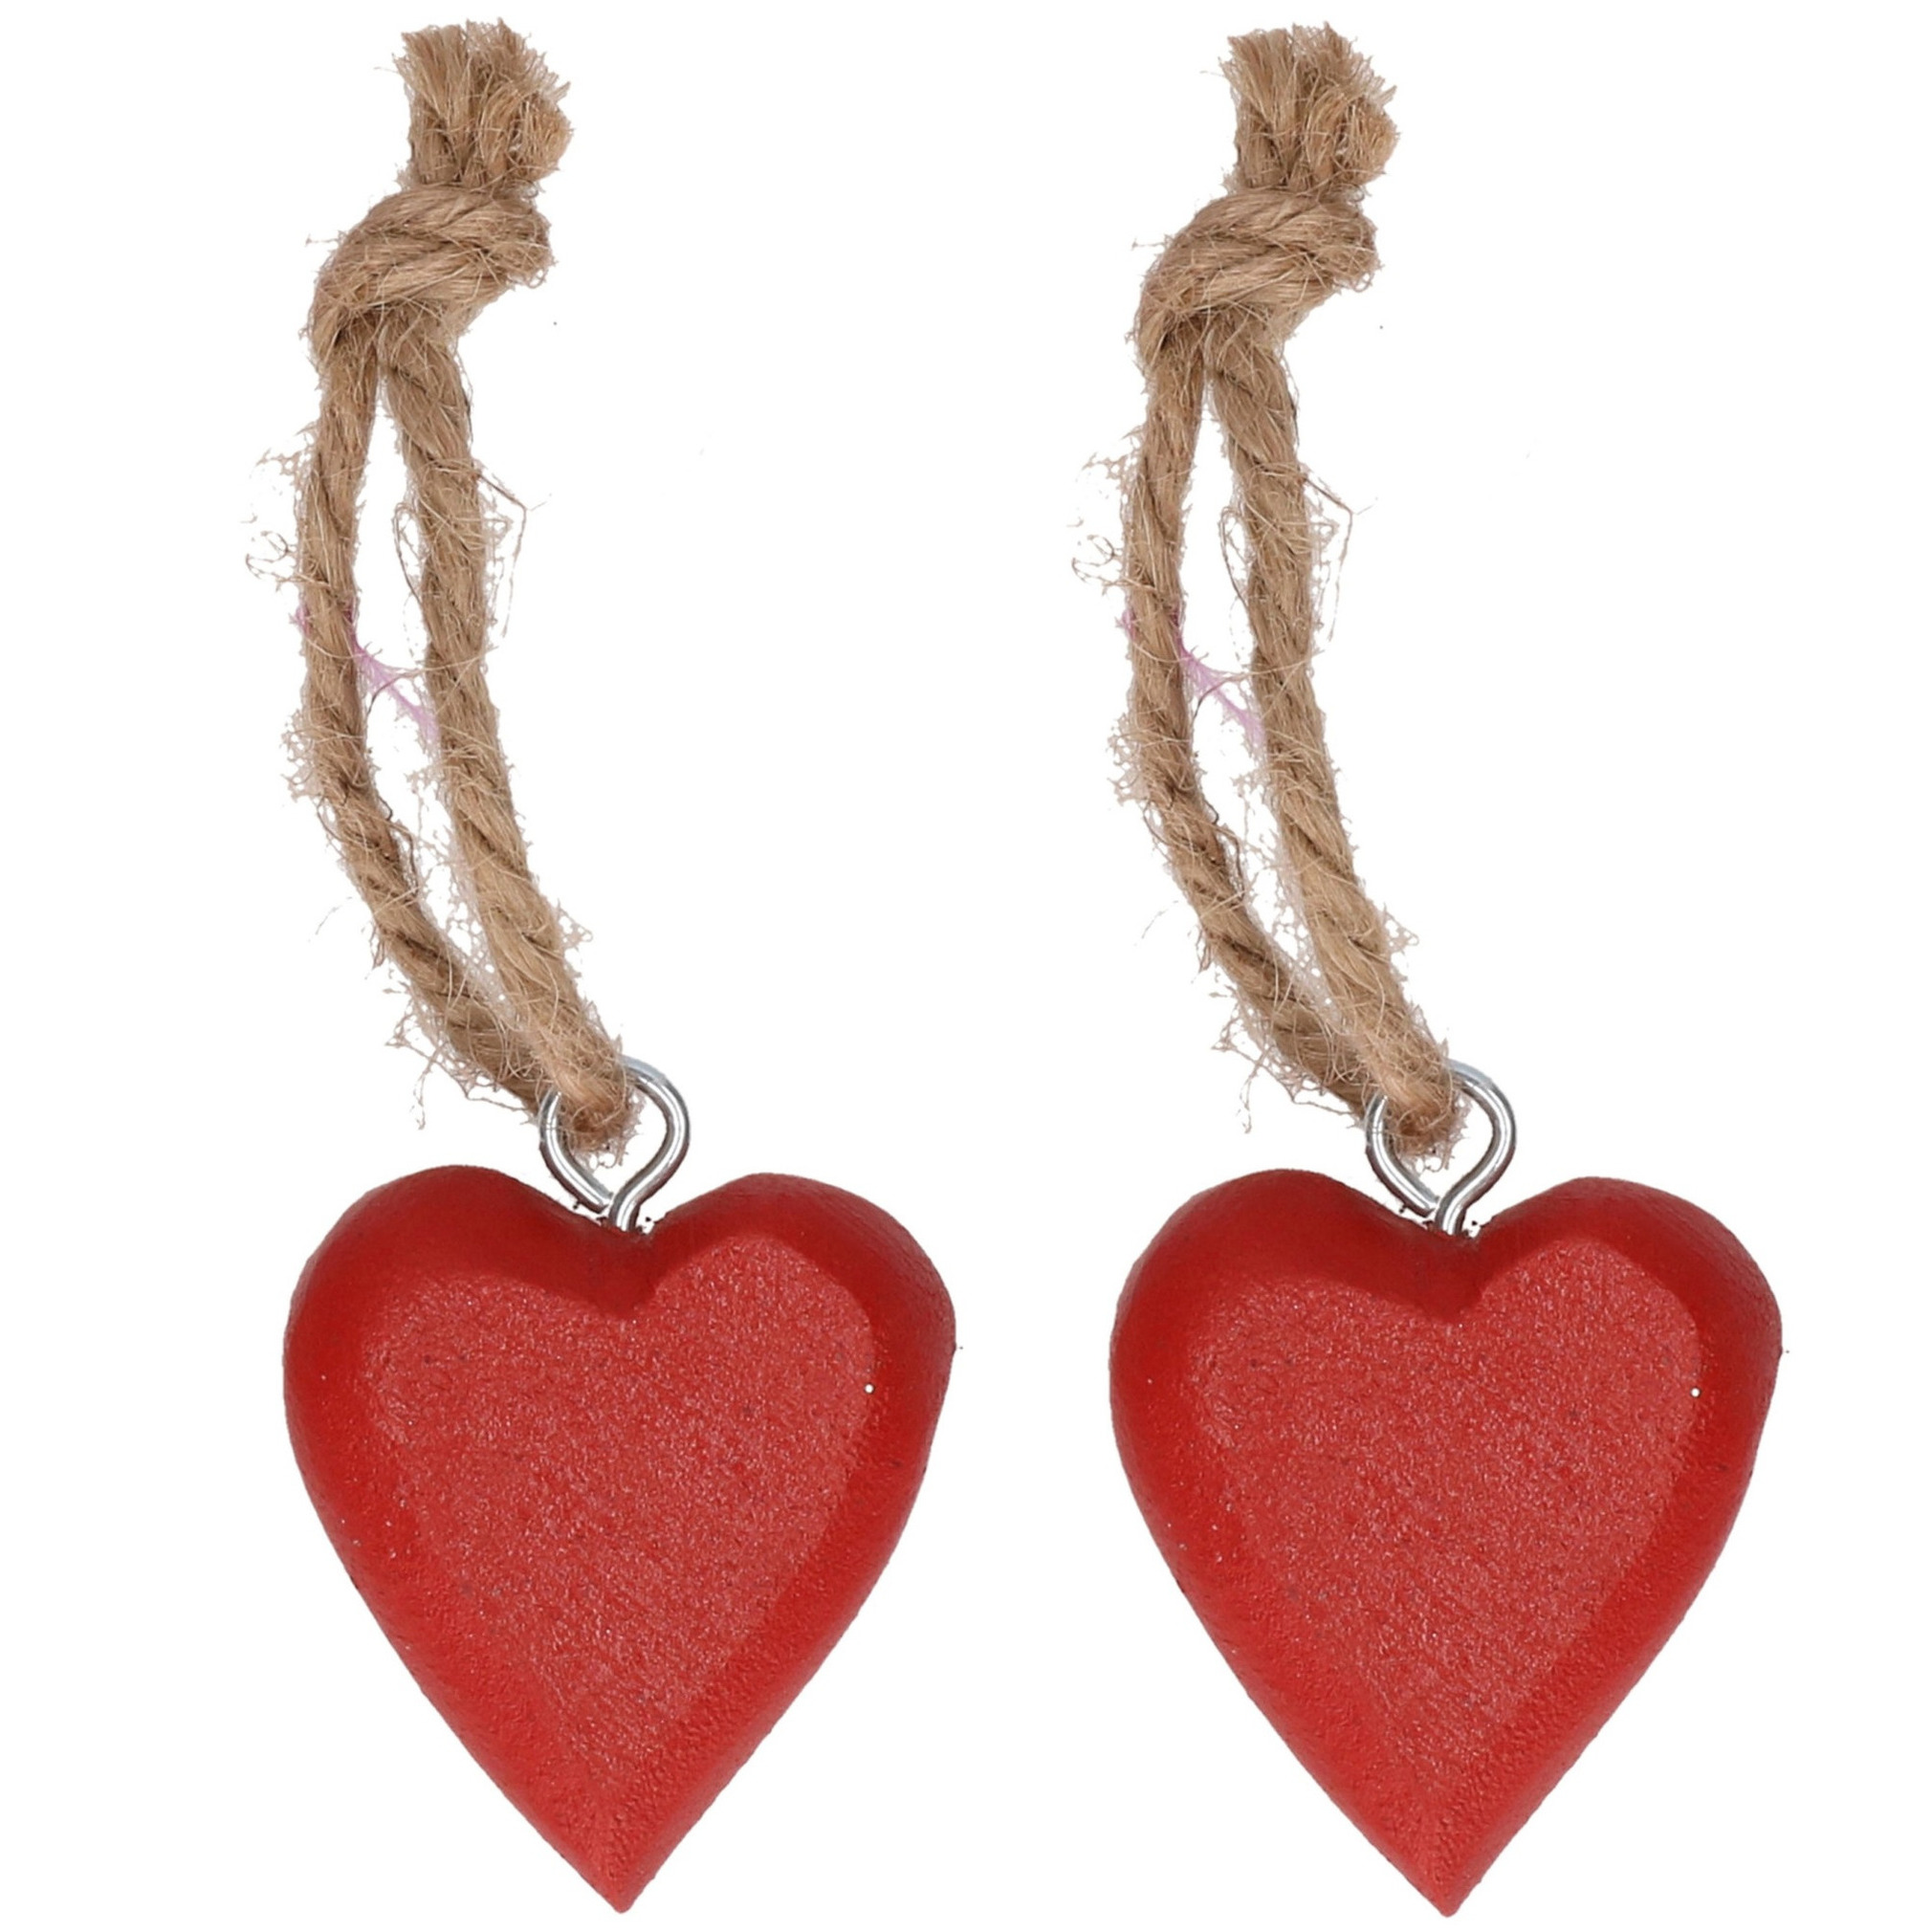 6x stuks rode hartjes hangertjes aan touwtje 5 cm